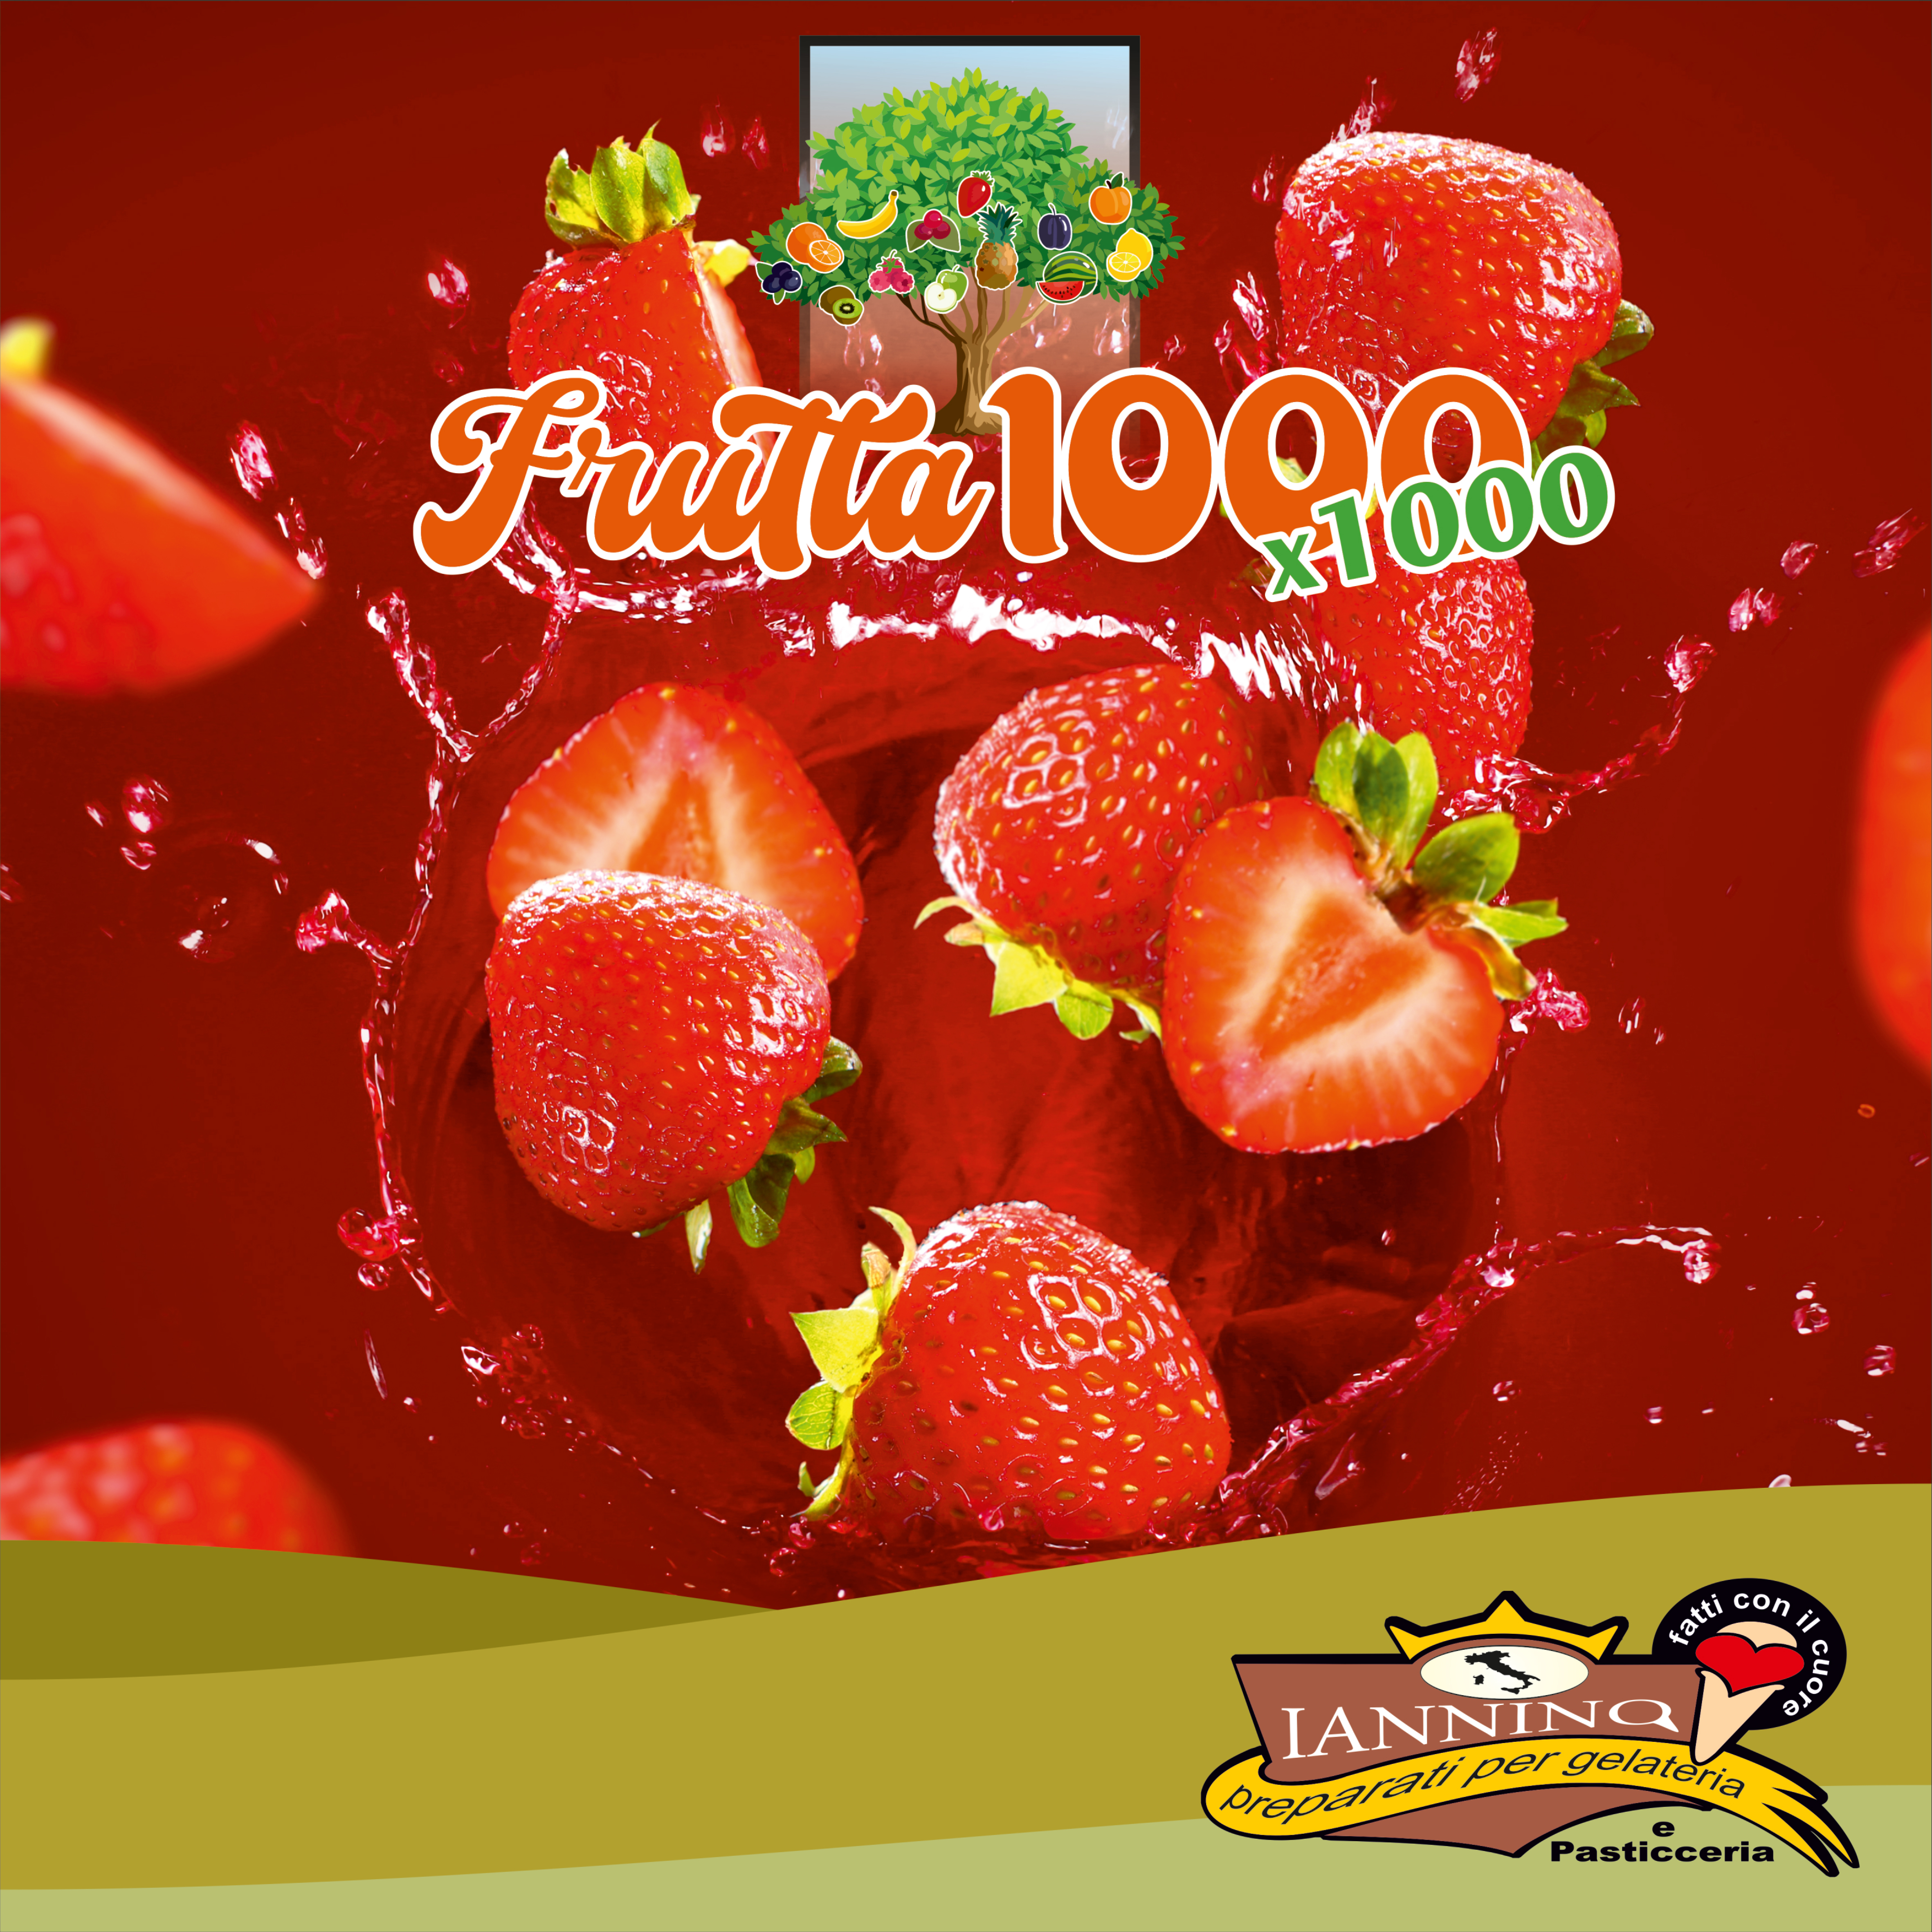 Fruit Paste - 1000x1000 Frutta!